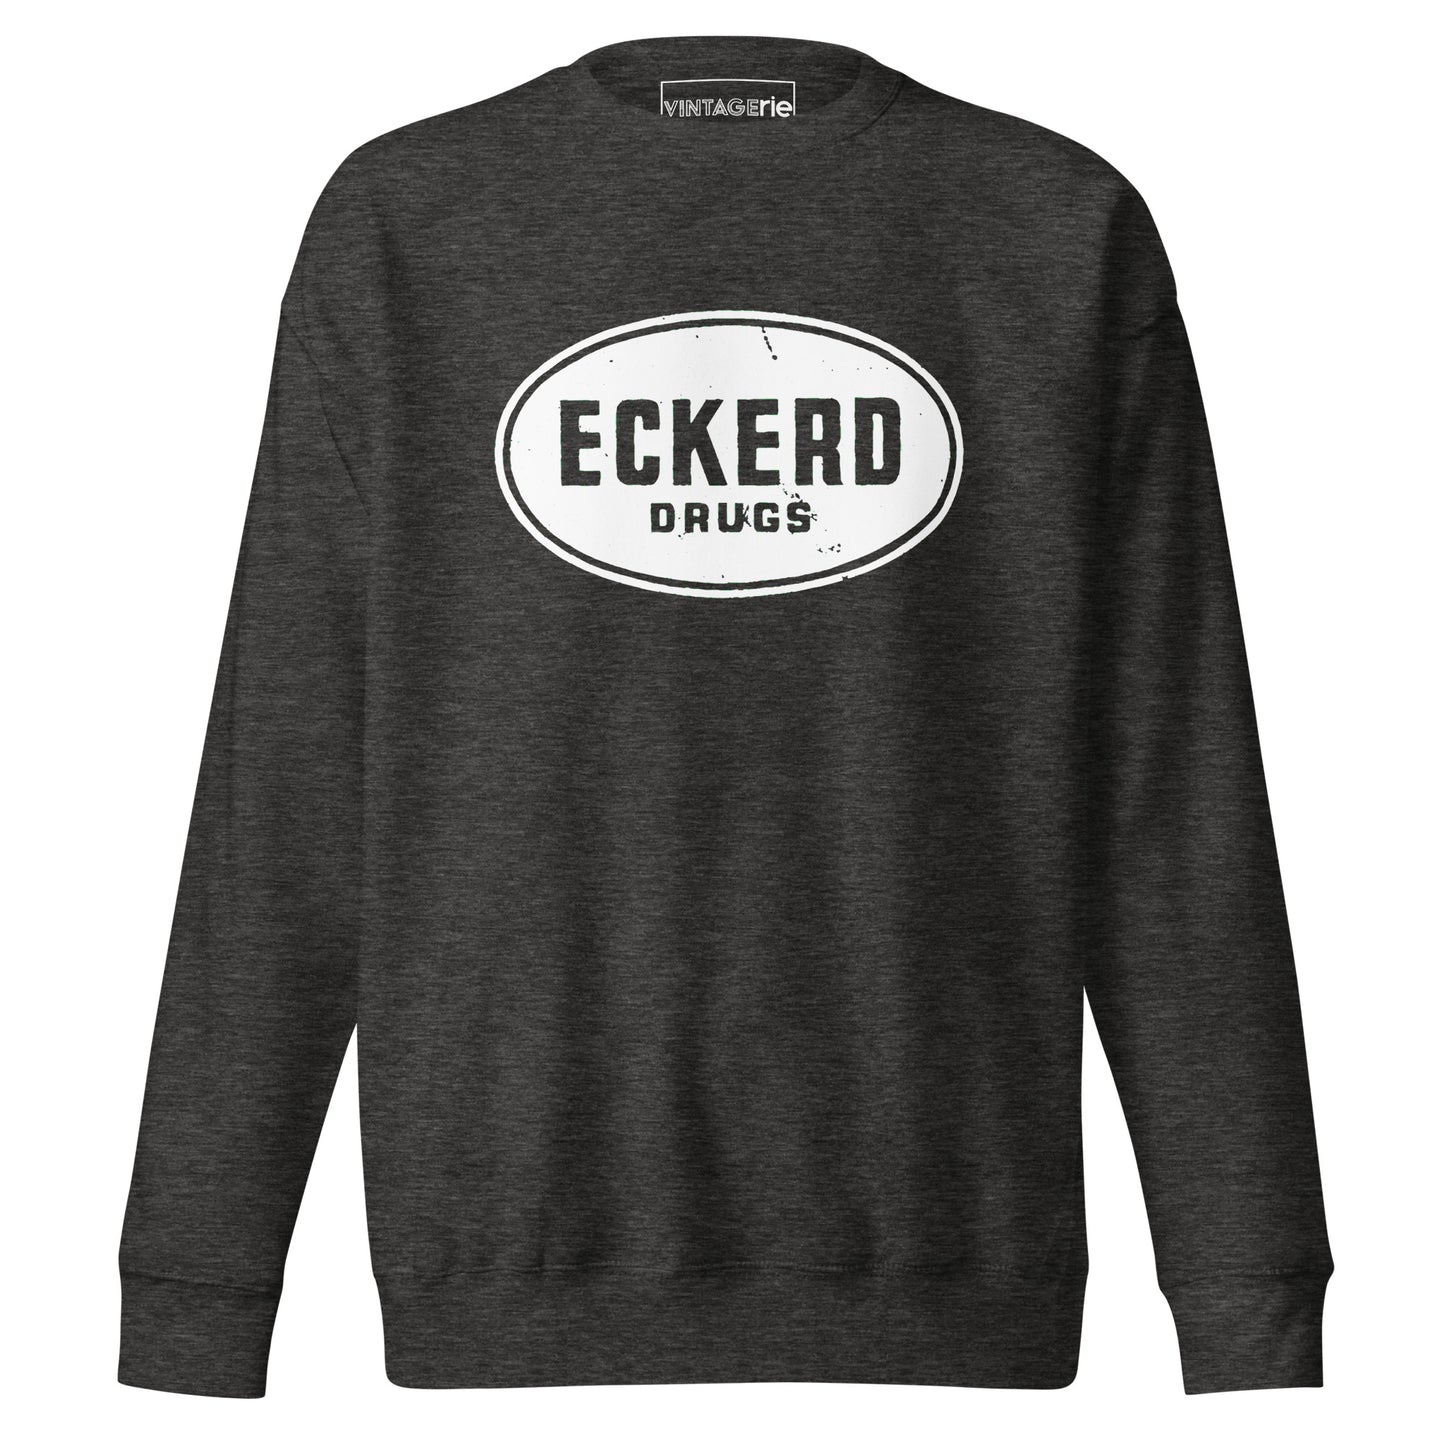 Eckerd Drugs Sweatshirt